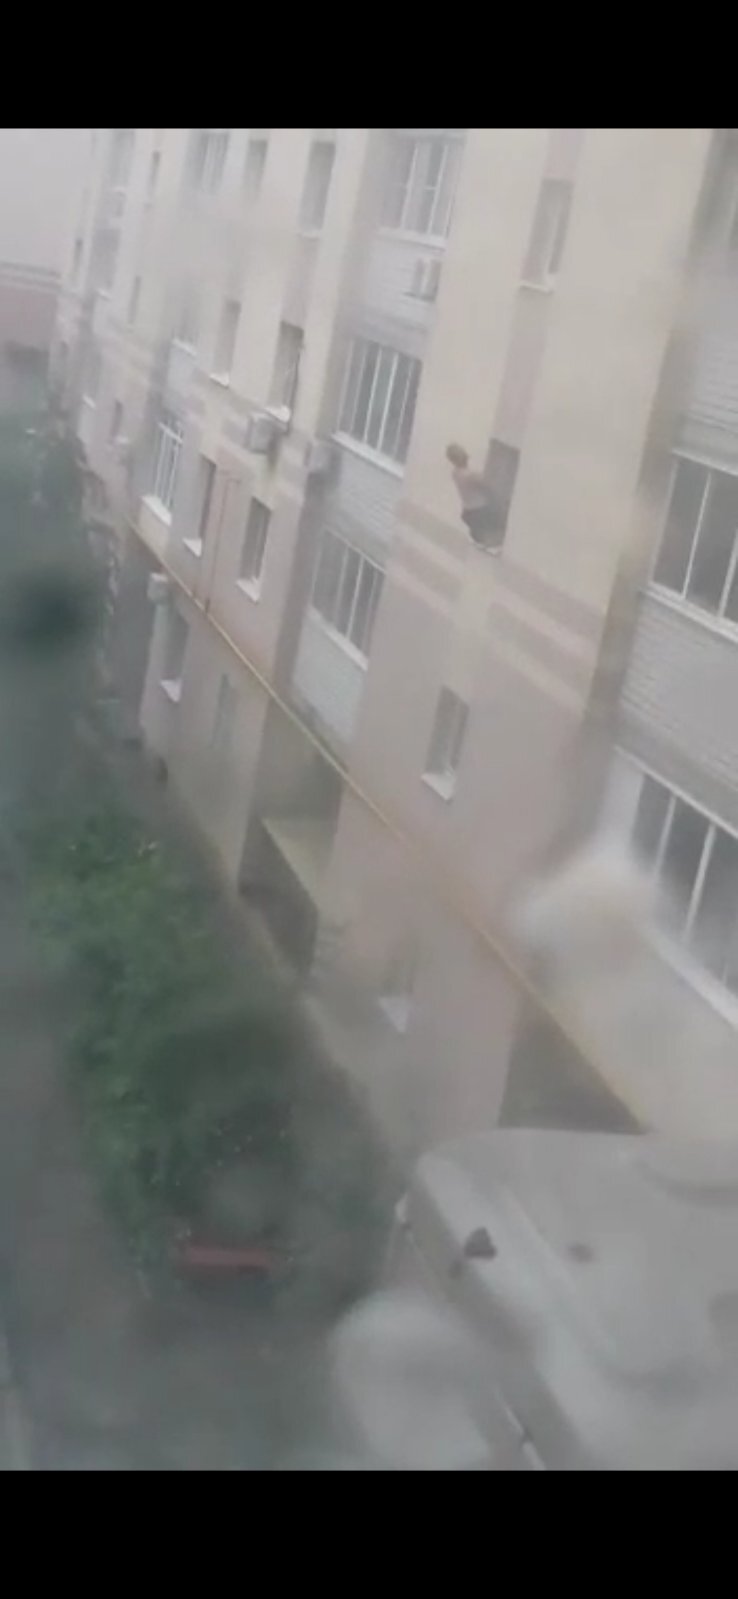 Как москвичи спасались от пожара в многоэтажке через окна на видео